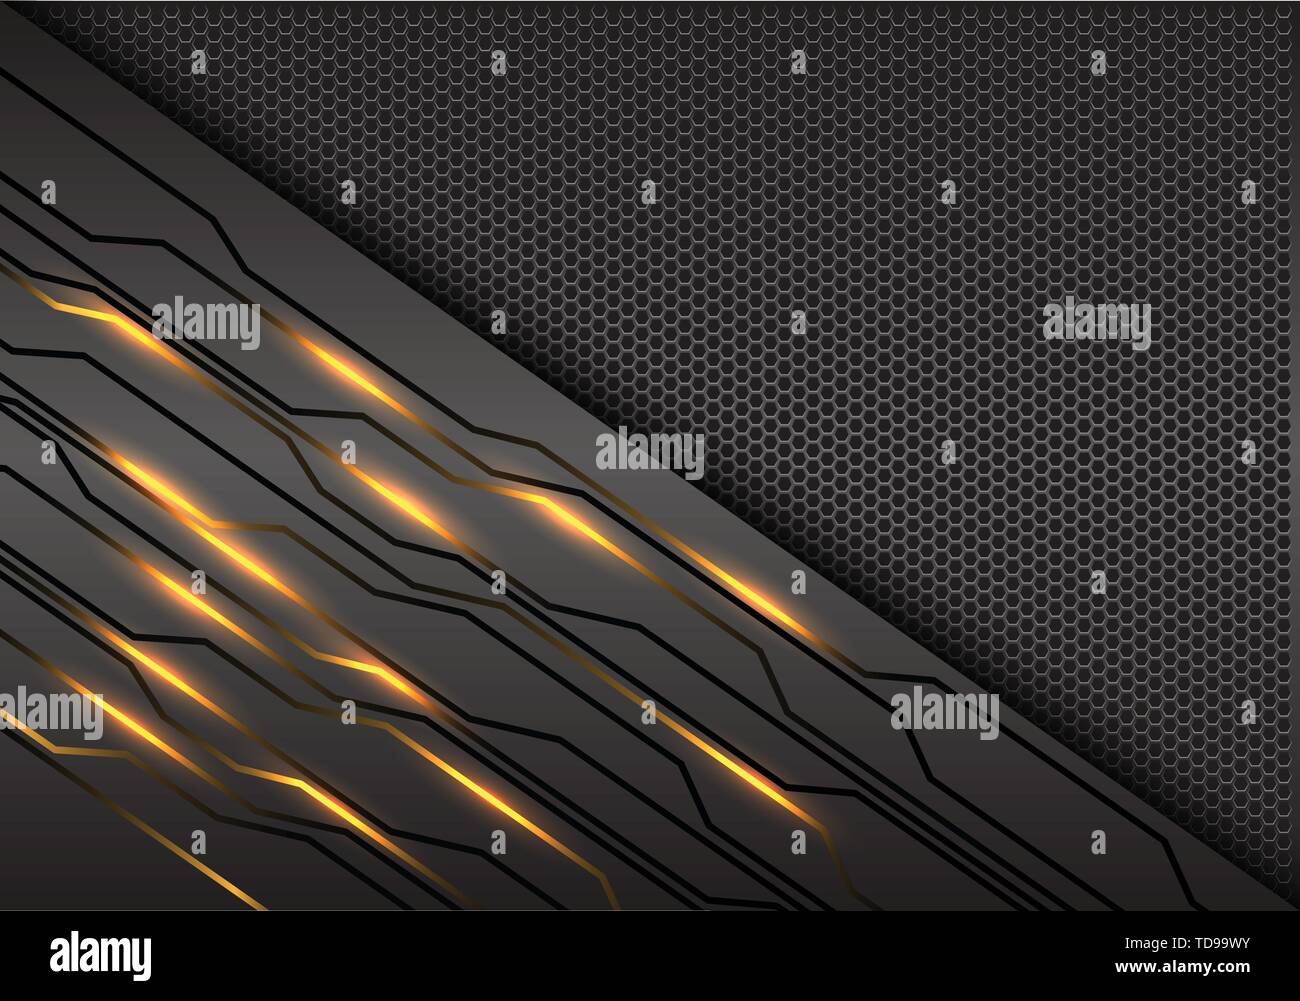 Résumé de la technologie de lumière jaune sur le circuit d'alimentation moderne design mesh futuristic background vector illustration. Illustration de Vecteur